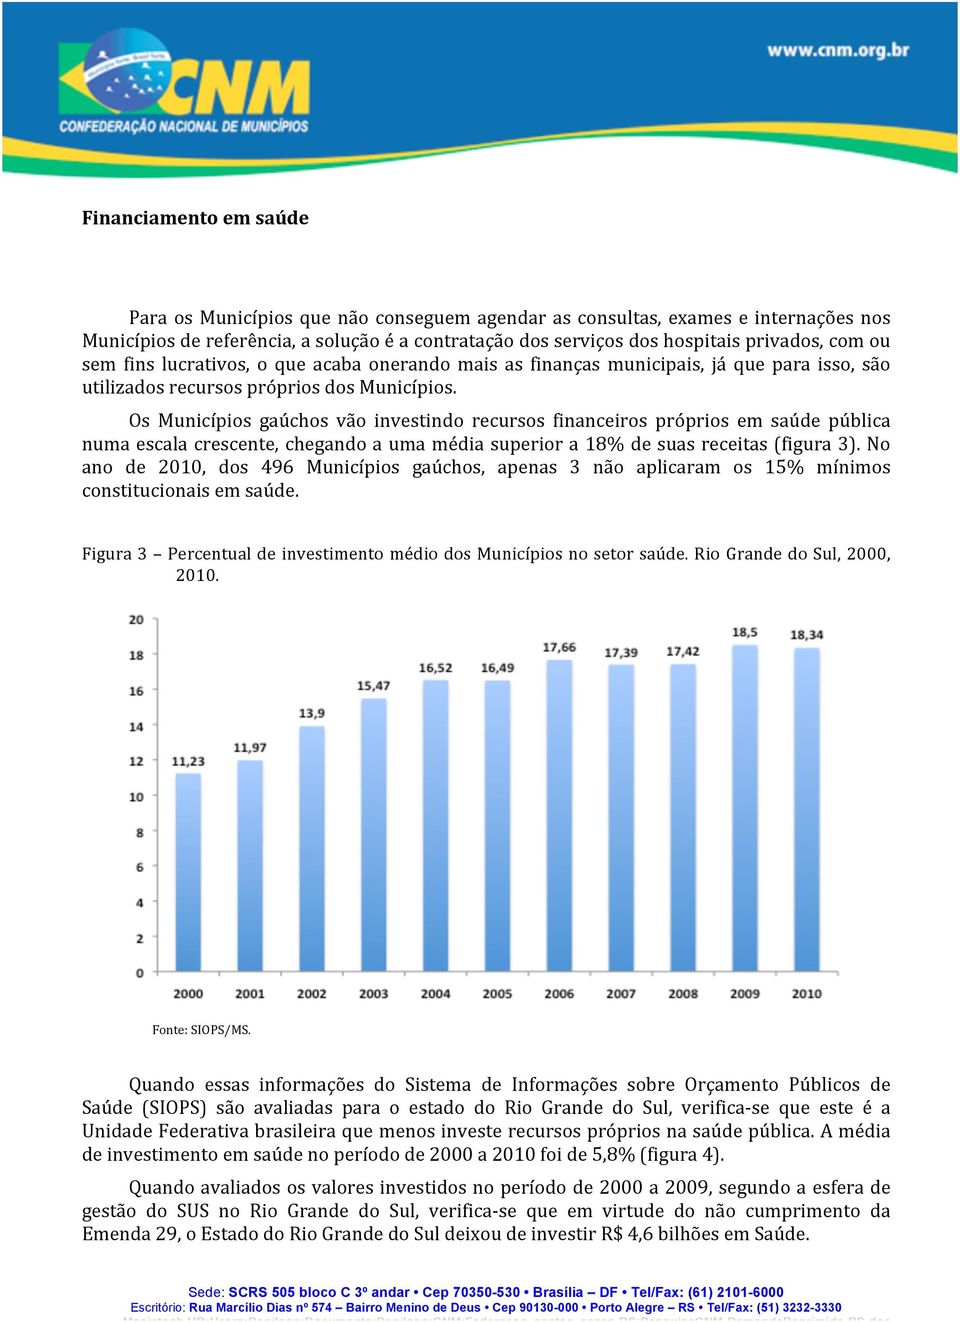 Os Municípios gaúchos vão investindo recursos financeiros próprios em saúde pública numa escala crescente, chegando a uma média superior a 18% de suas receitas (figura 3).